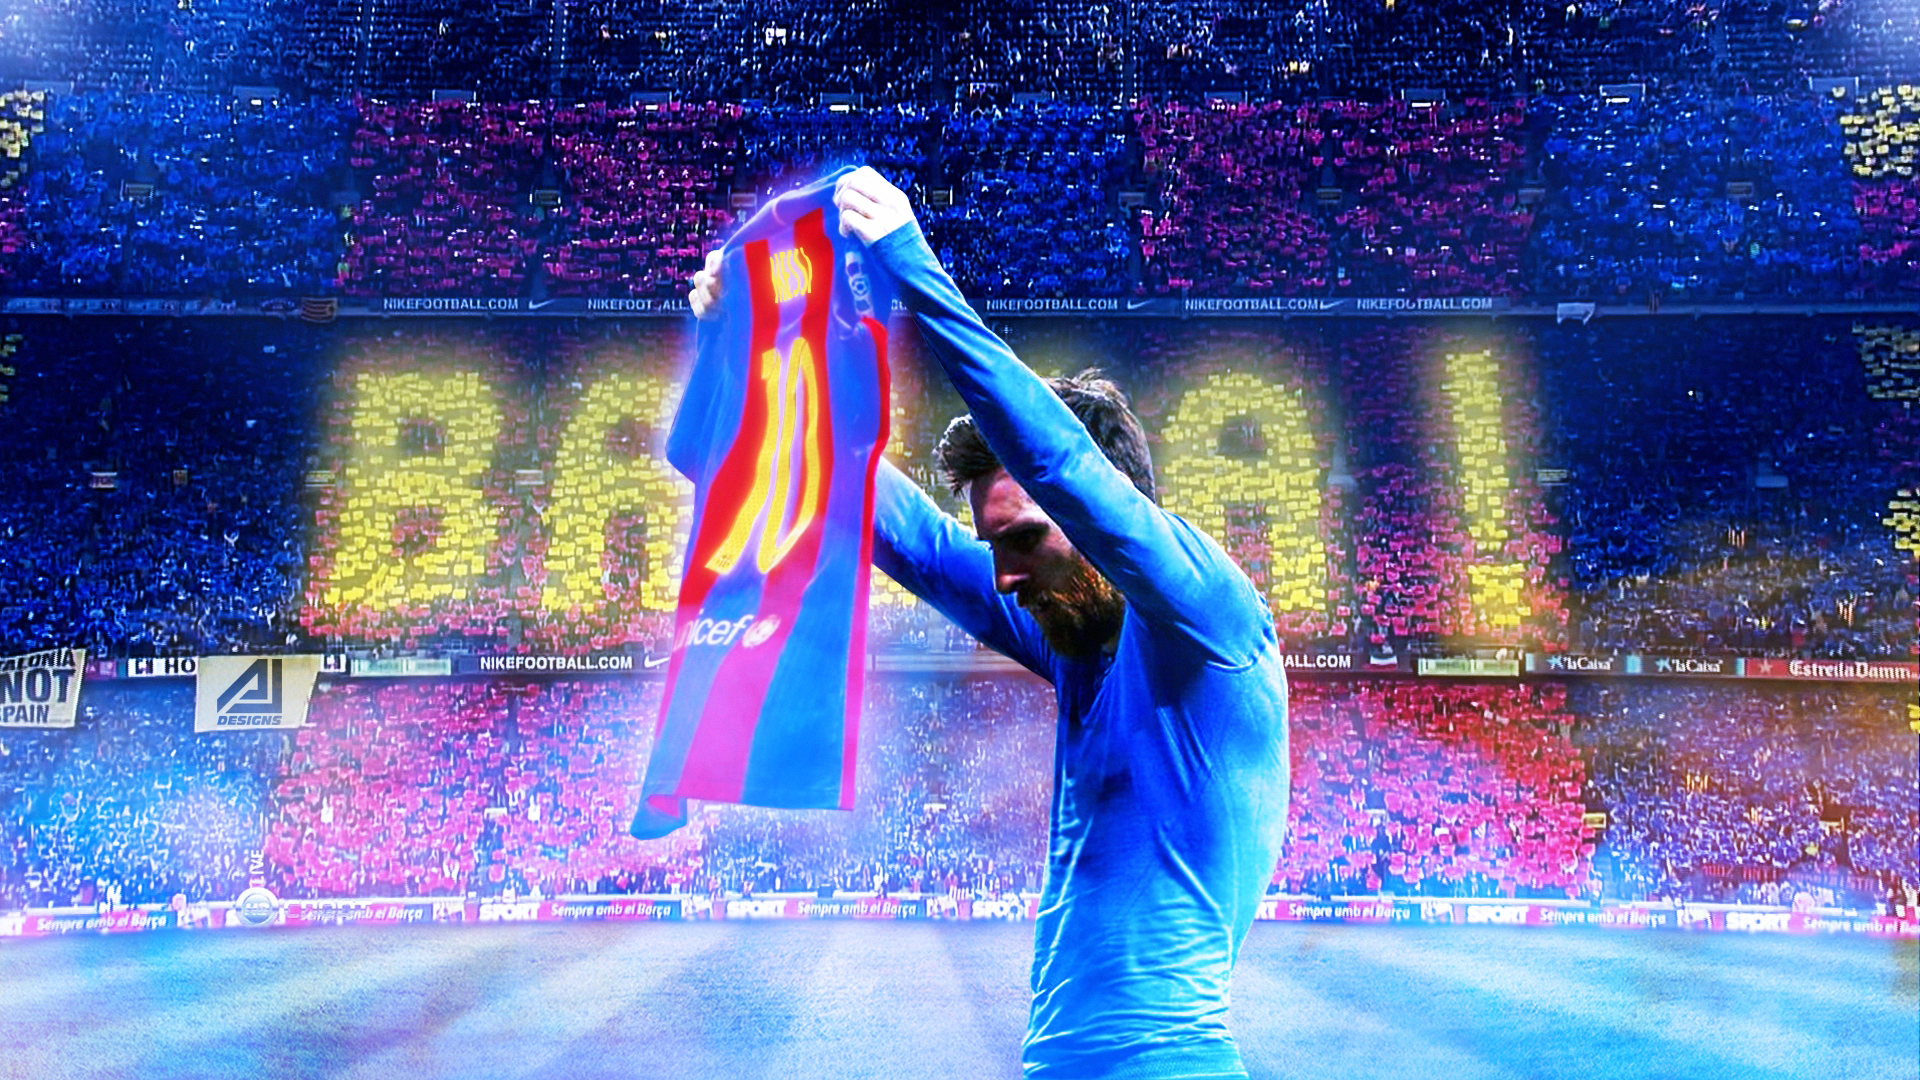 \'Người đặc biệt\' Messi lại tiếp tục đem đến cho các fan hâm mộ những bức ảnh nền siêu đẹp siêu sắc nét. Hãy ngửi thở thấy được sự tỉ mỉ của các họa sĩ thiết kế thông qua hình ảnh này nhé.